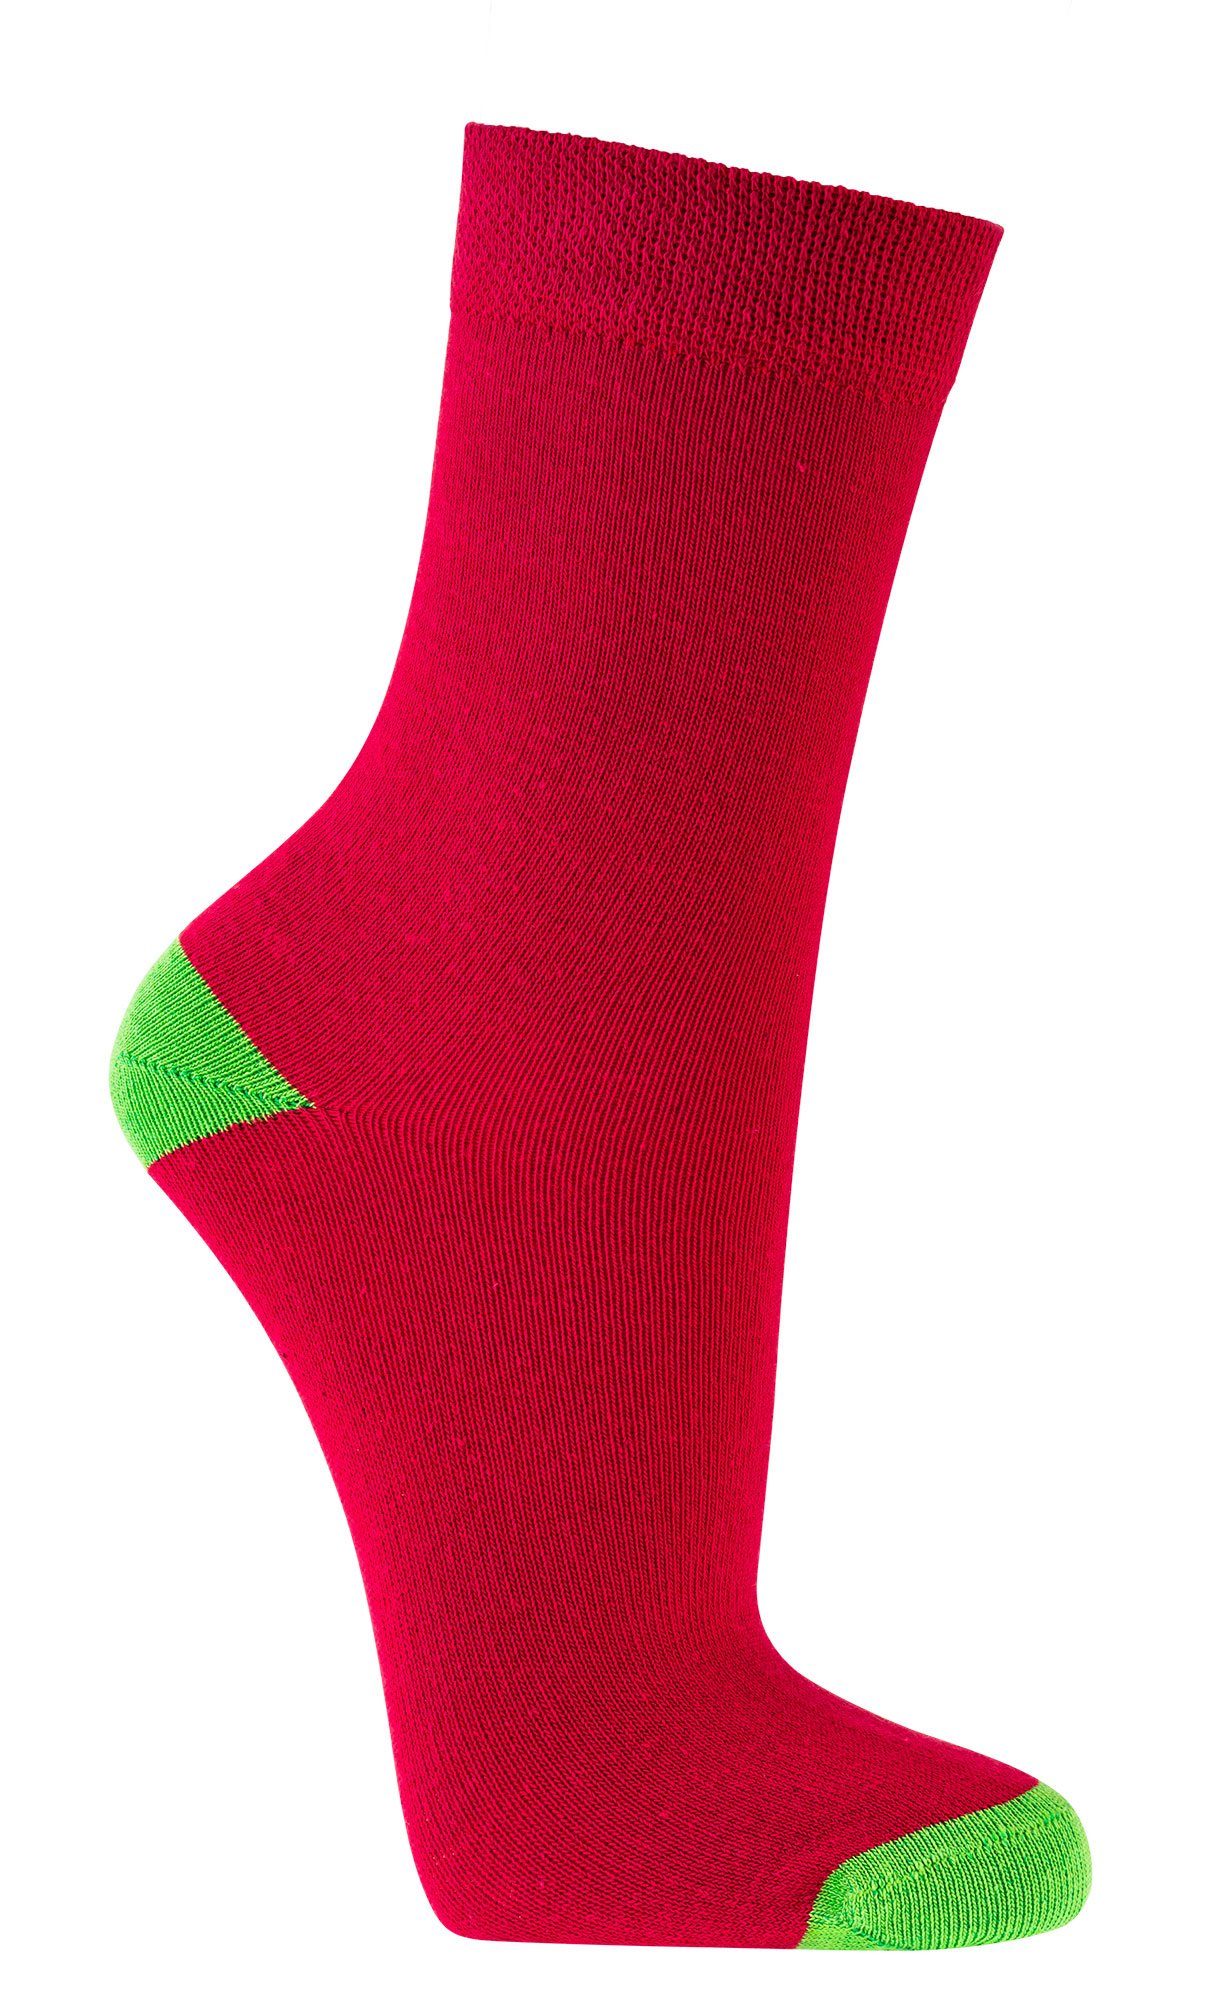 FussFreunde Socken 6 Paar Kinder Socken für Mädchen & Jungen, GUTE LAUNE FARBEN